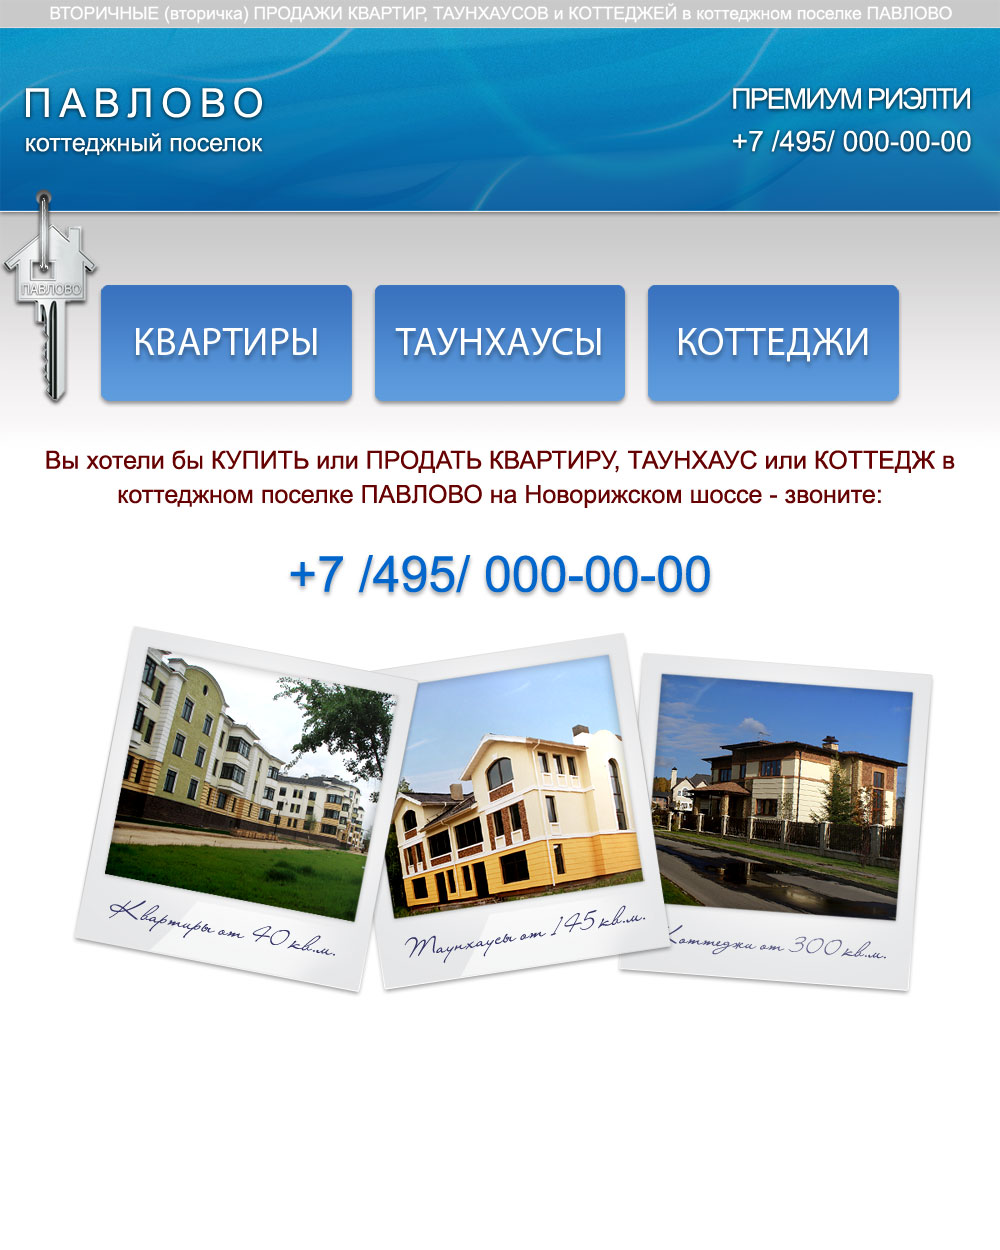 Сайт вторичных продаж коттеджного поселка Павлово